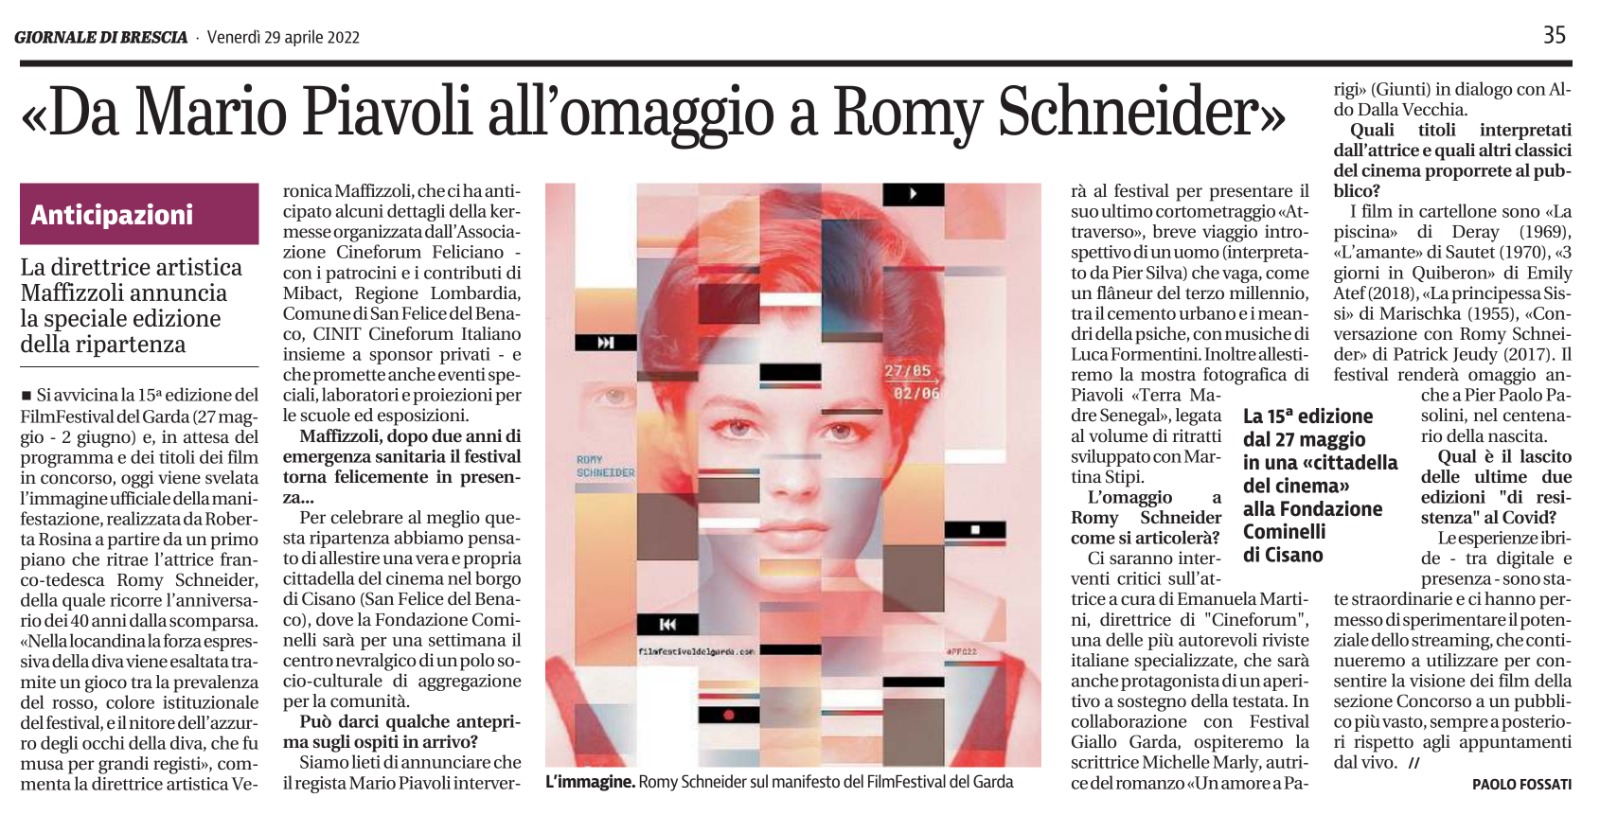 Giornale di Brescia | 29 aprile 2022 | Da Mario Piavoli all’omaggio a Romy Schmeider | Paolo Fossati